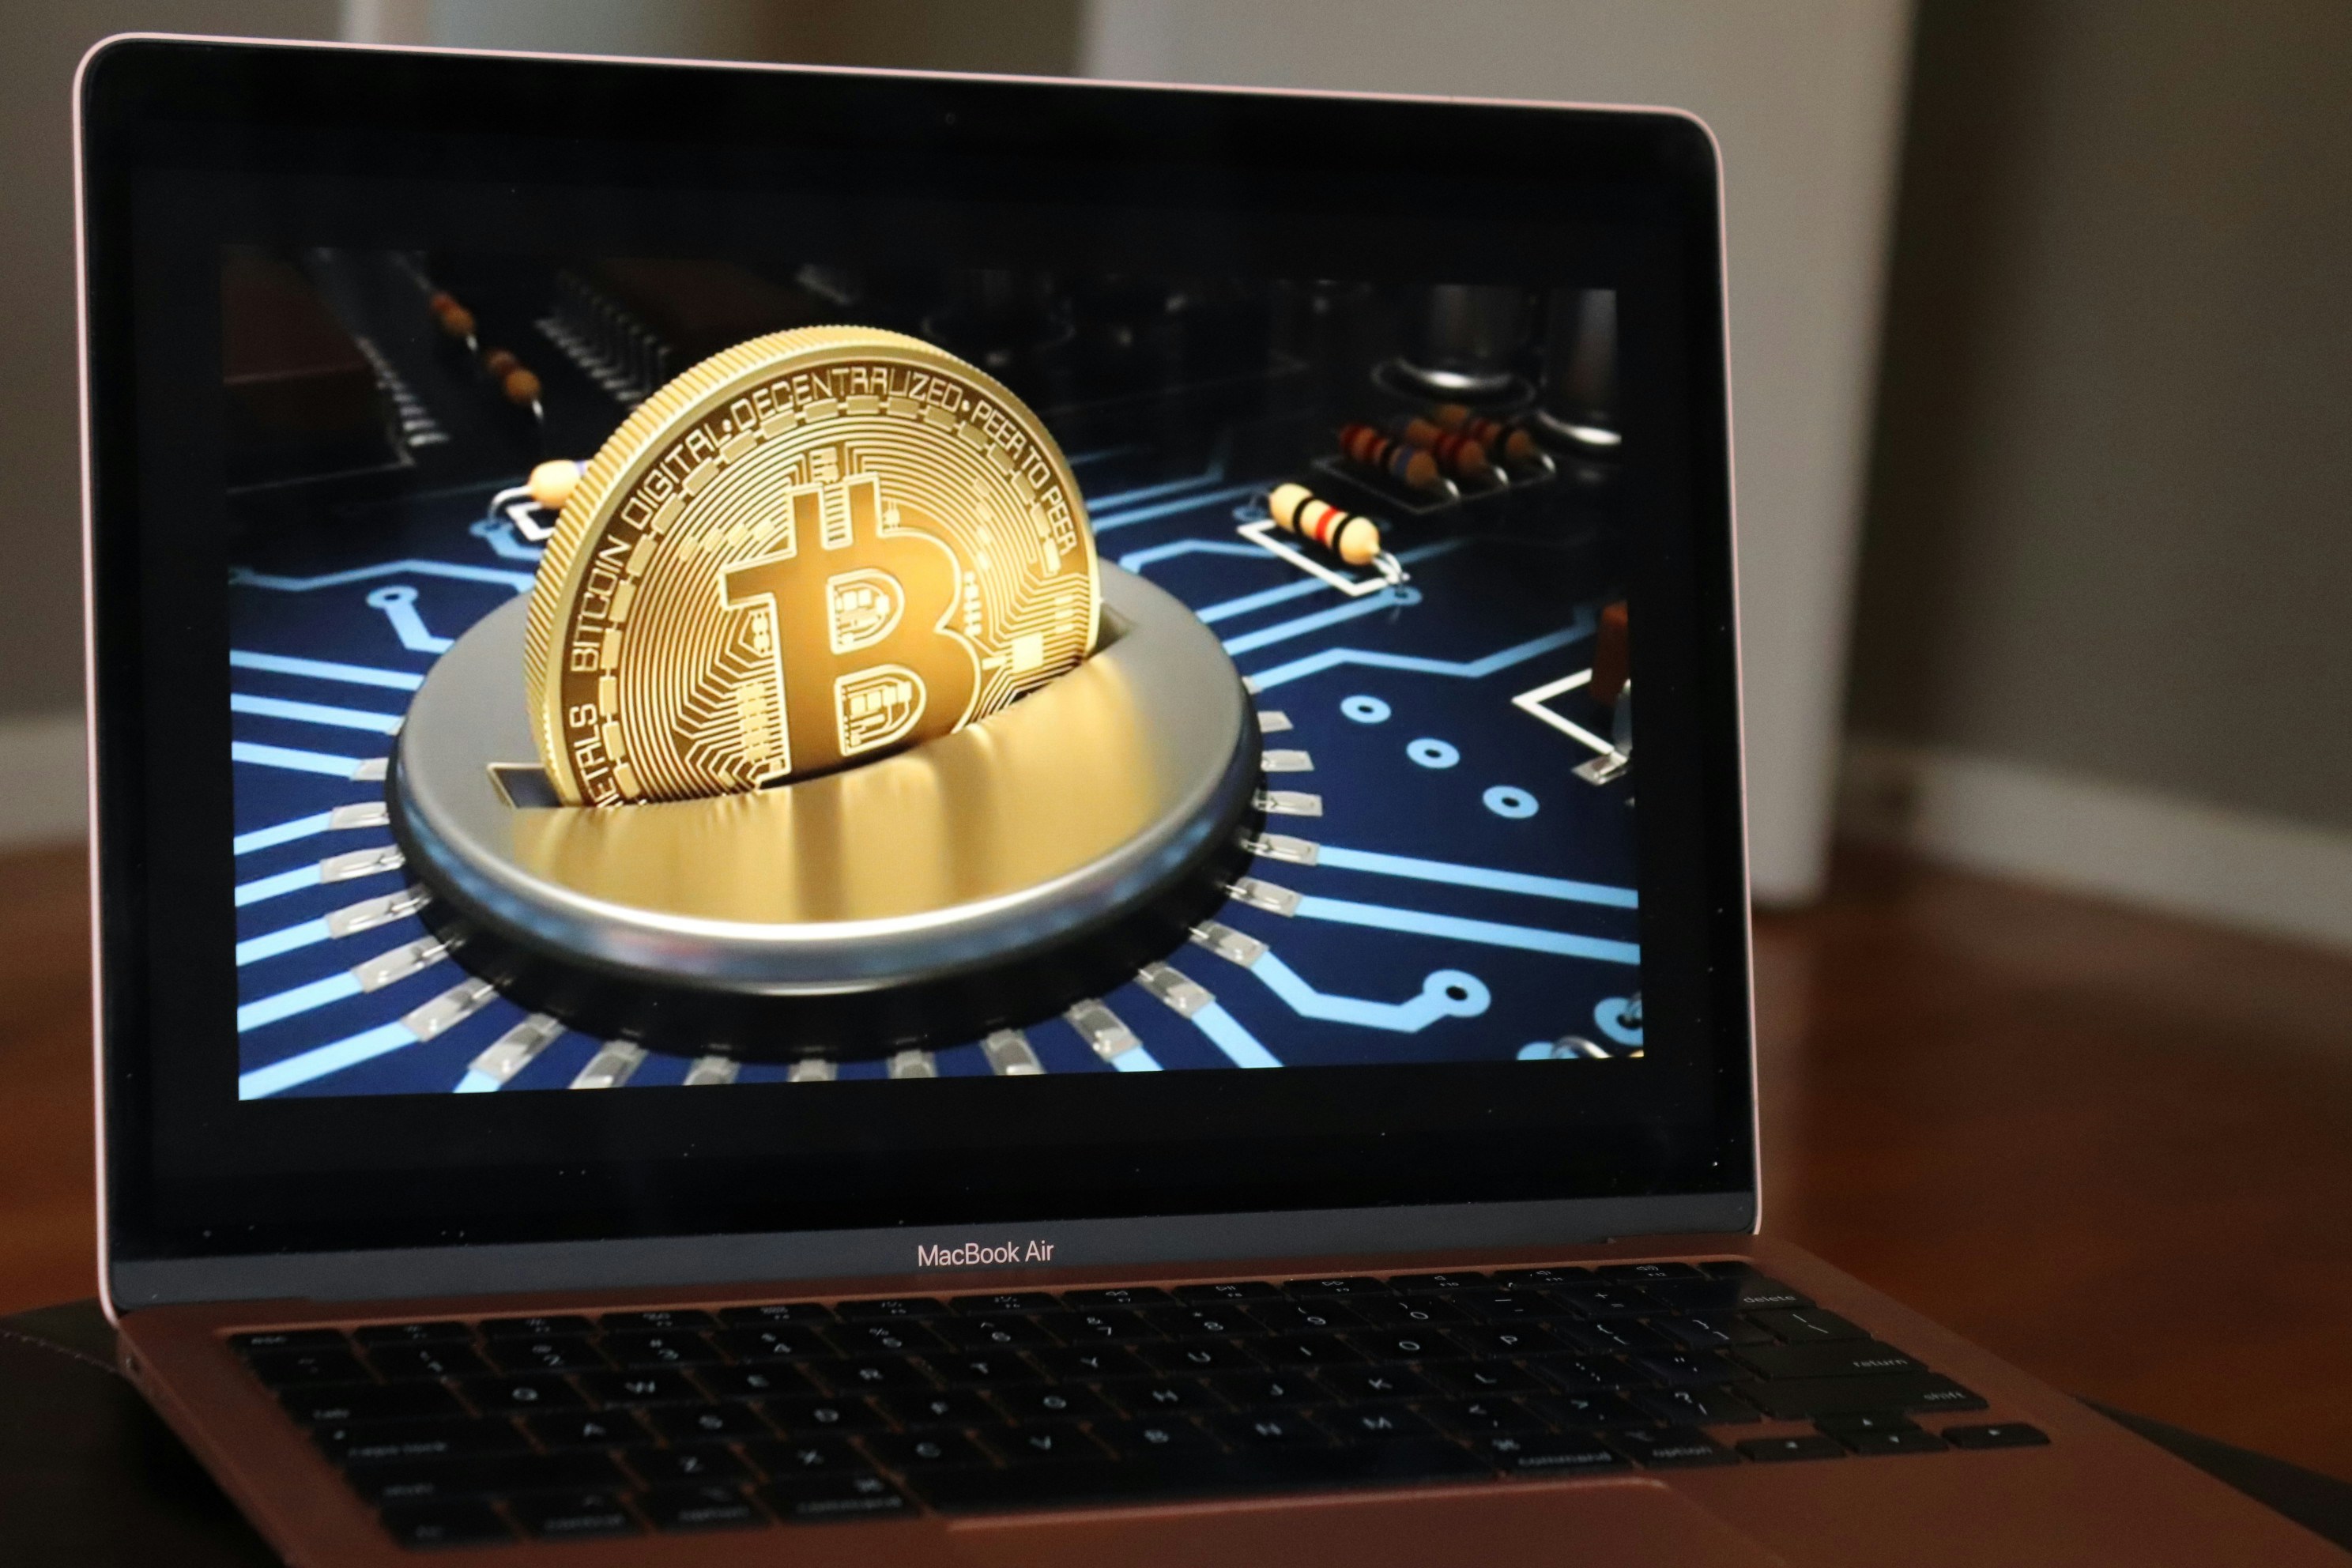 Bitcoin design displayed on a rose gold MacBook Air.